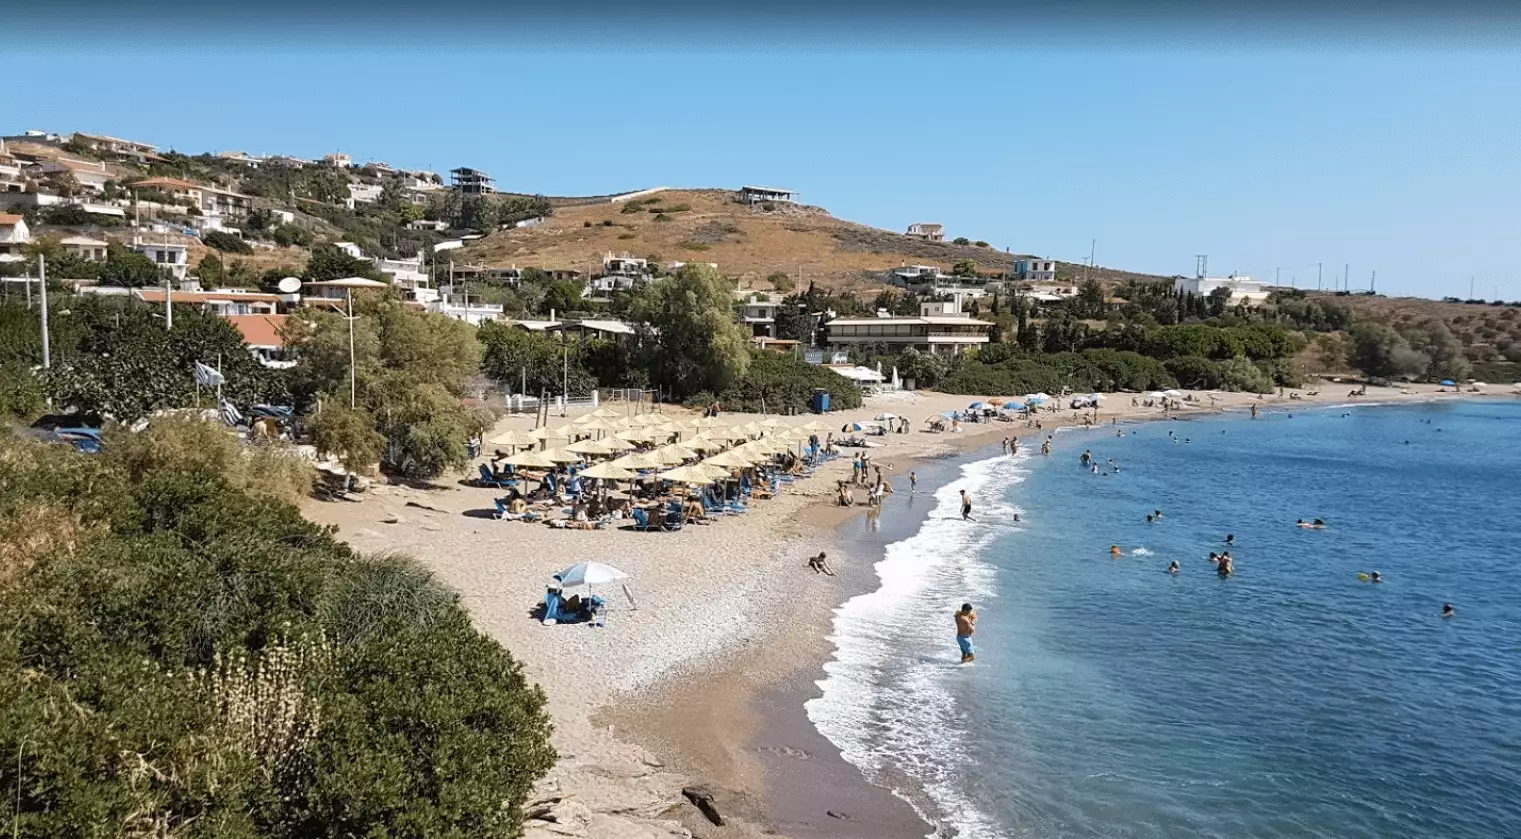 Καλοπήγαδο: Η ήσυχη παραλία της Αττικής με τα καθαρά νερά1